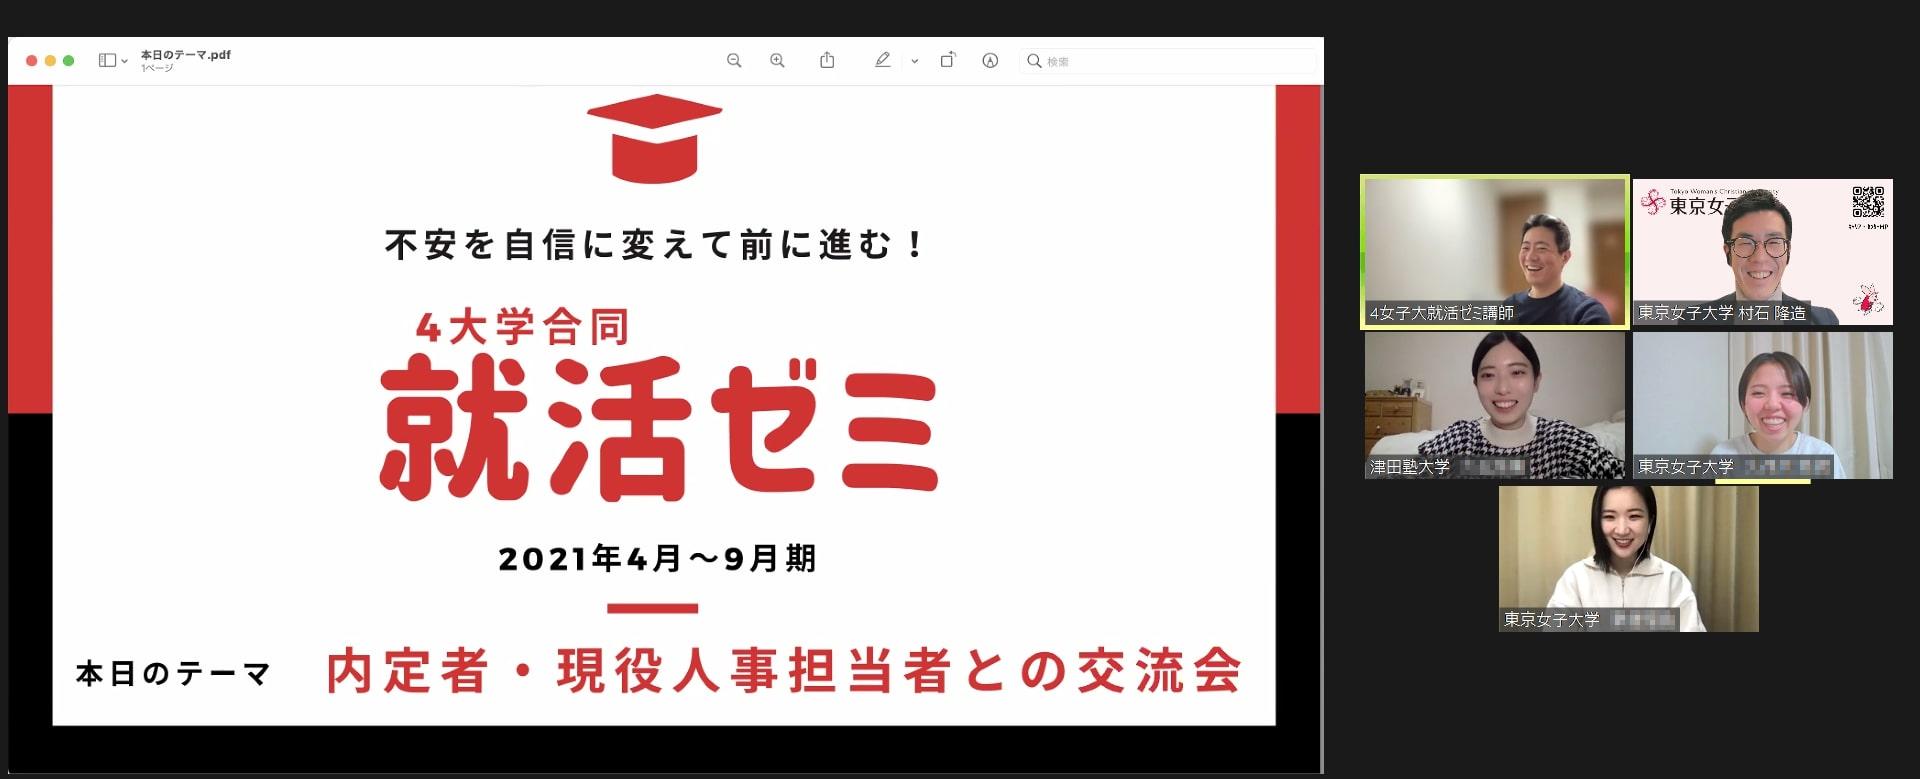 東京女子大学が立ち上げた「オンライン就活ゼミ」を拡大 -- 8大学で実施し連携をさらに強化